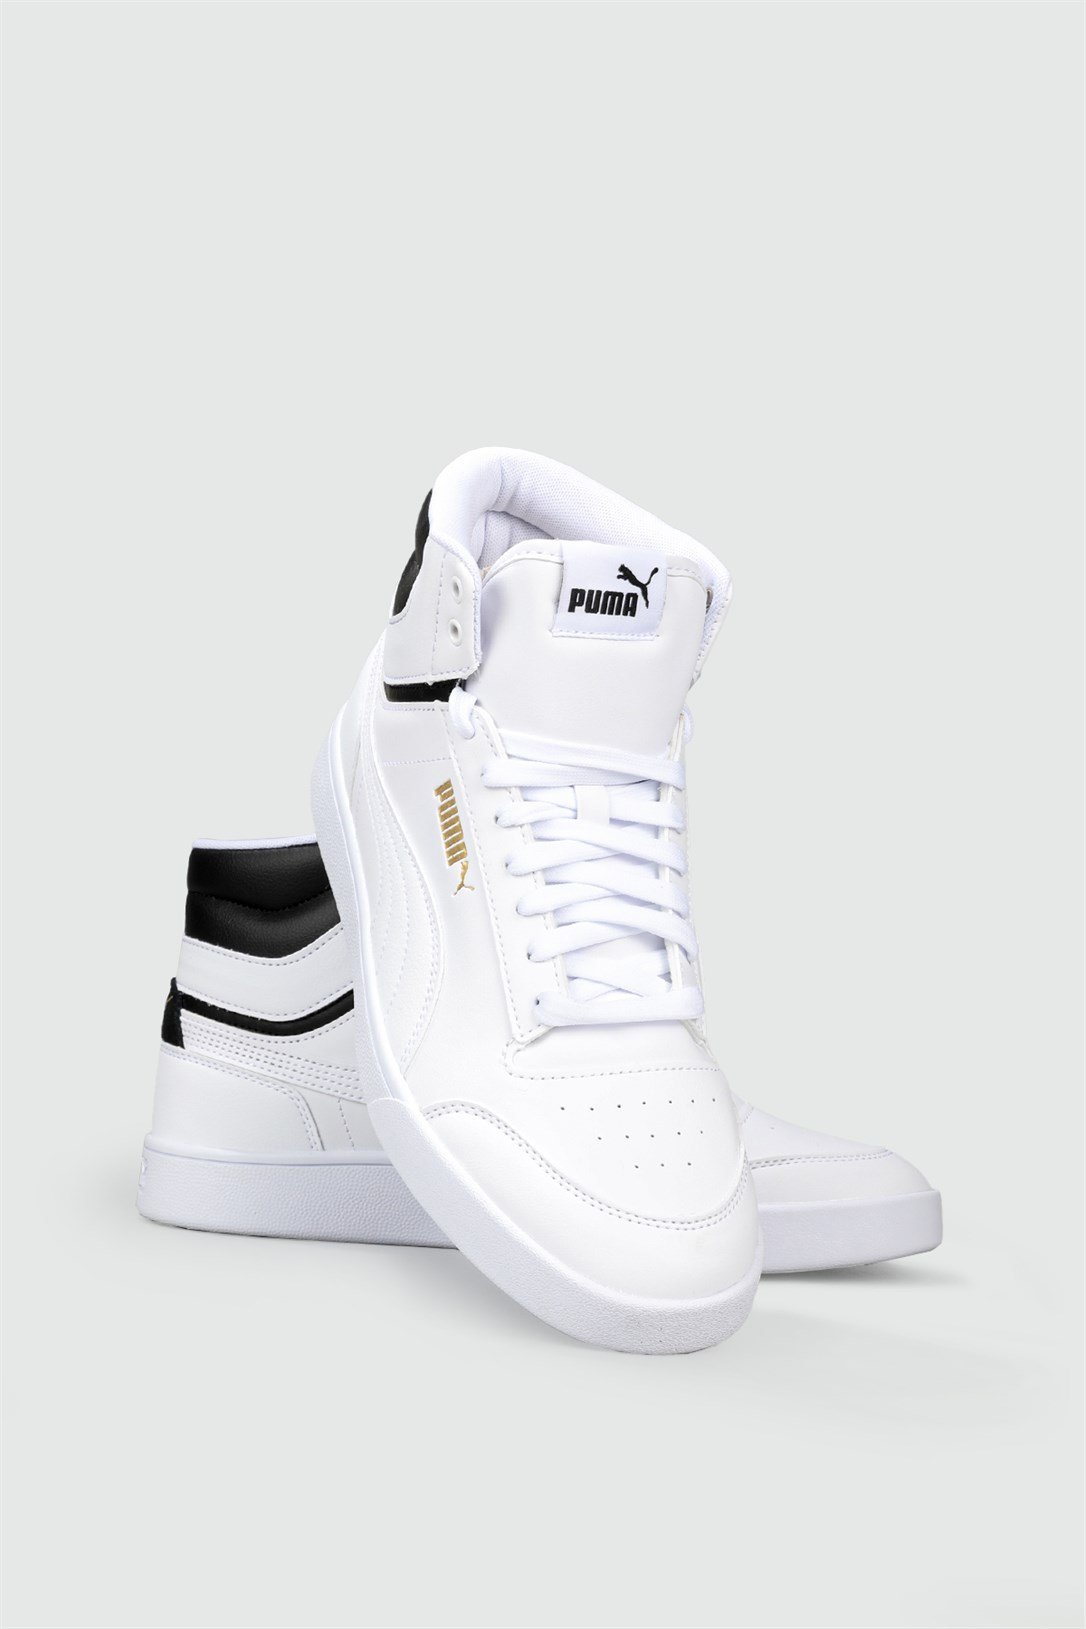 Puma Bilekten Boğazlı Basket Beyaz Siyah Erkek Spor Ayakkabı 380748-01